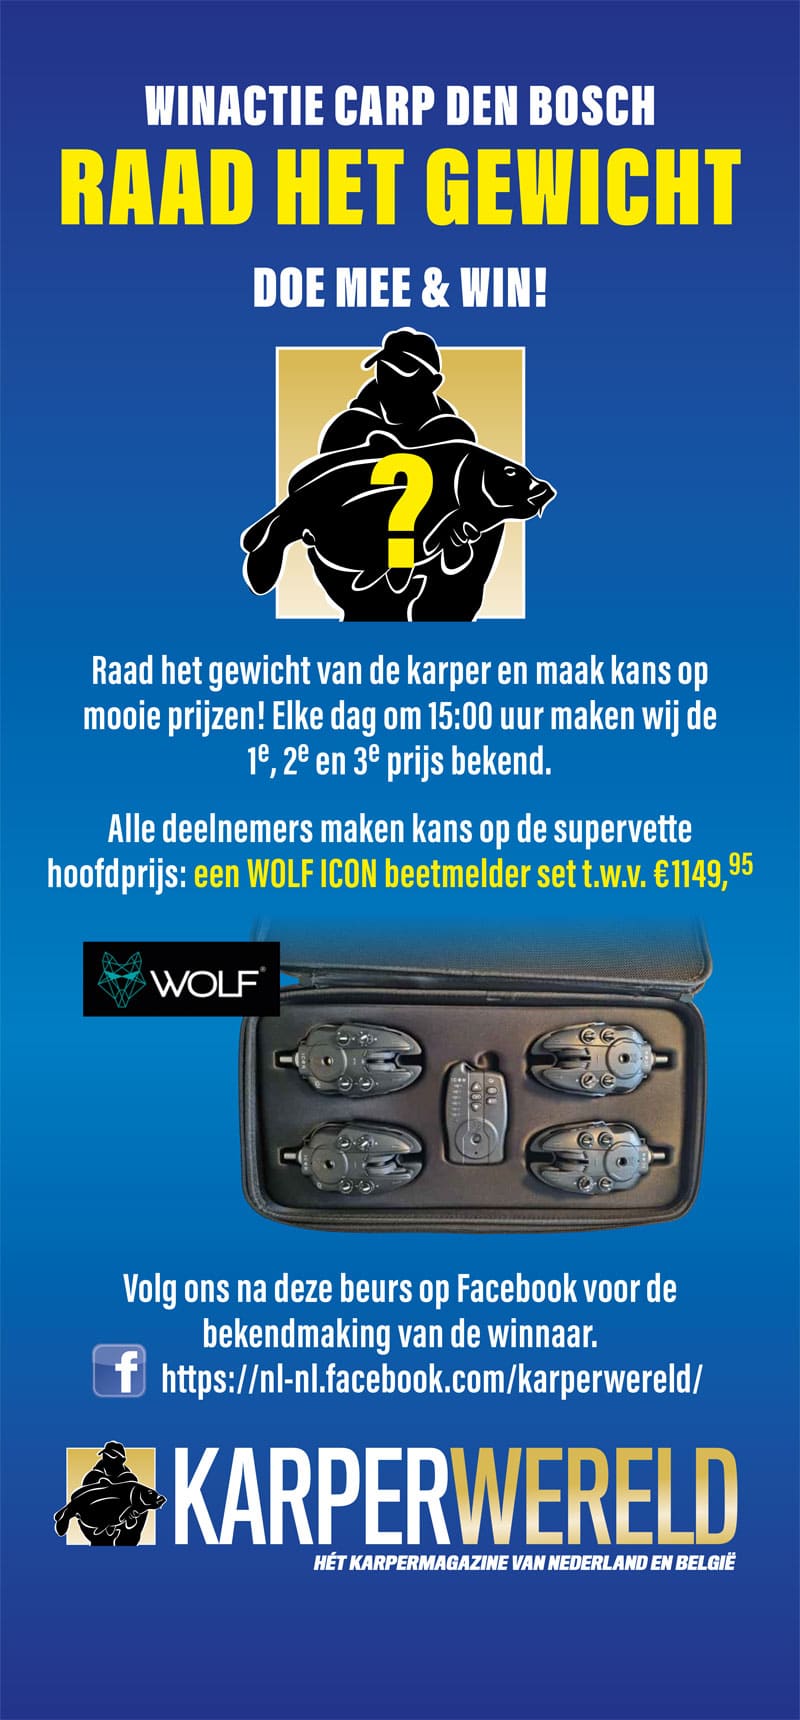 De hoofdprijs van deze actie is de Wolf Icon QI & QR Hubb 4 Rod Set t.w.v. € 1149,95!